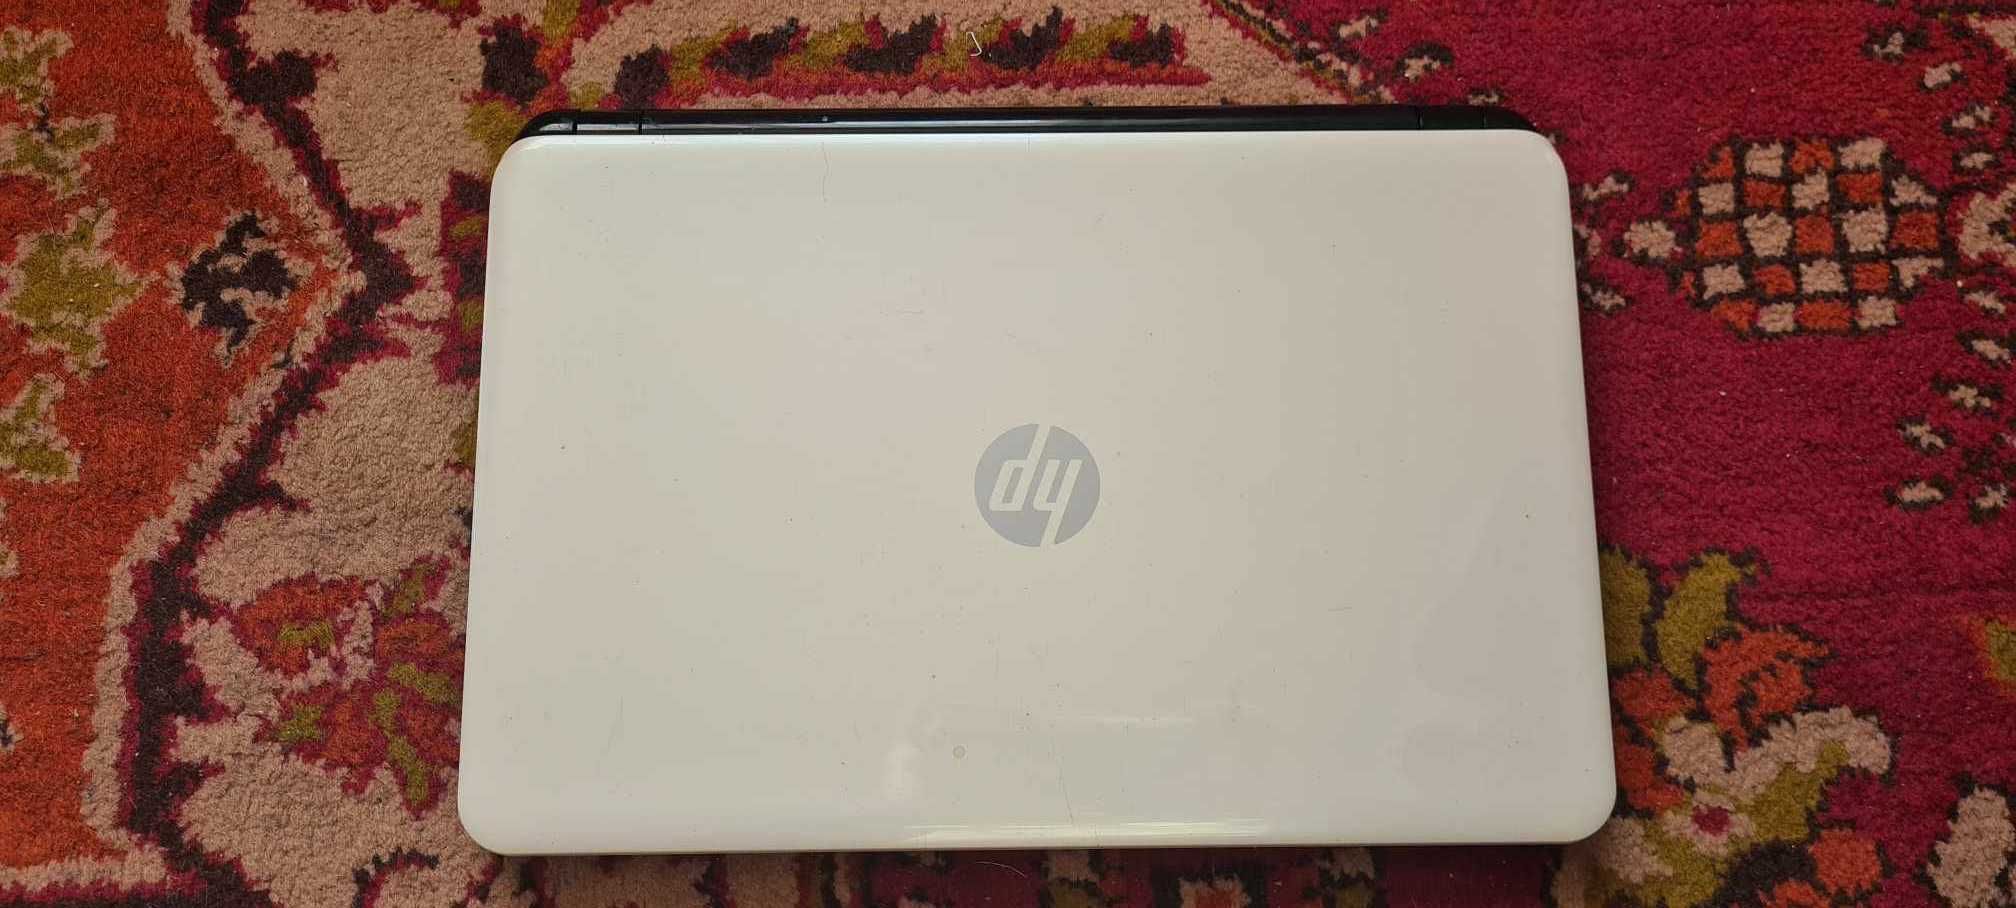 Dezmembrez laptop HP 15 model 15-r030sq